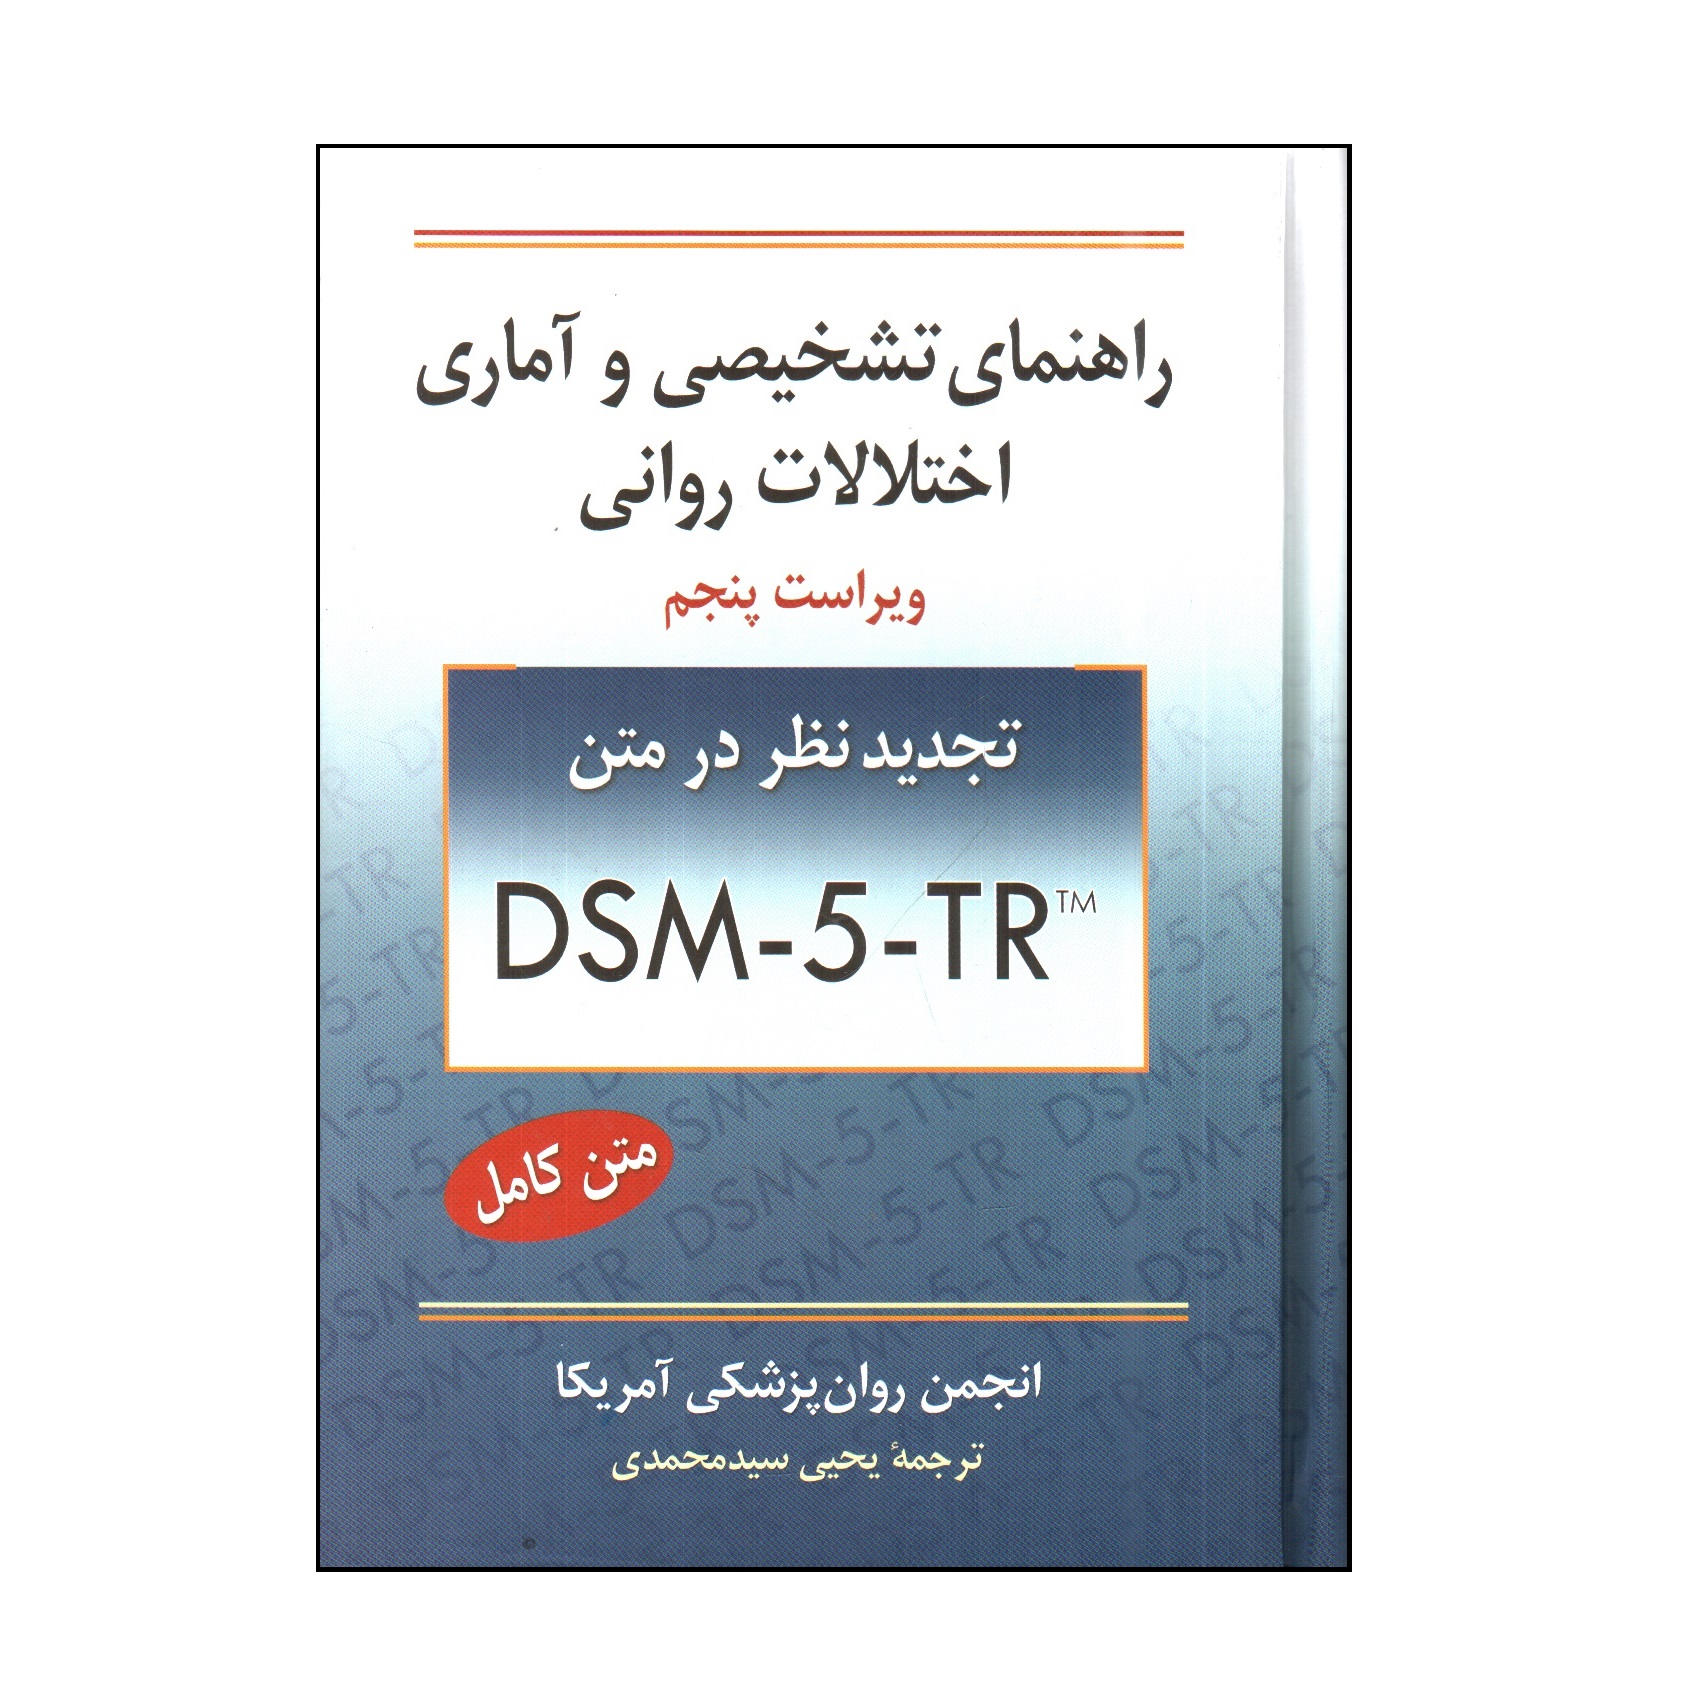 کتاب راهنمای تشخيصی و آماری اختلال های روانی DSM-5 اثر جمعی از نویسندگان انتشارات روان